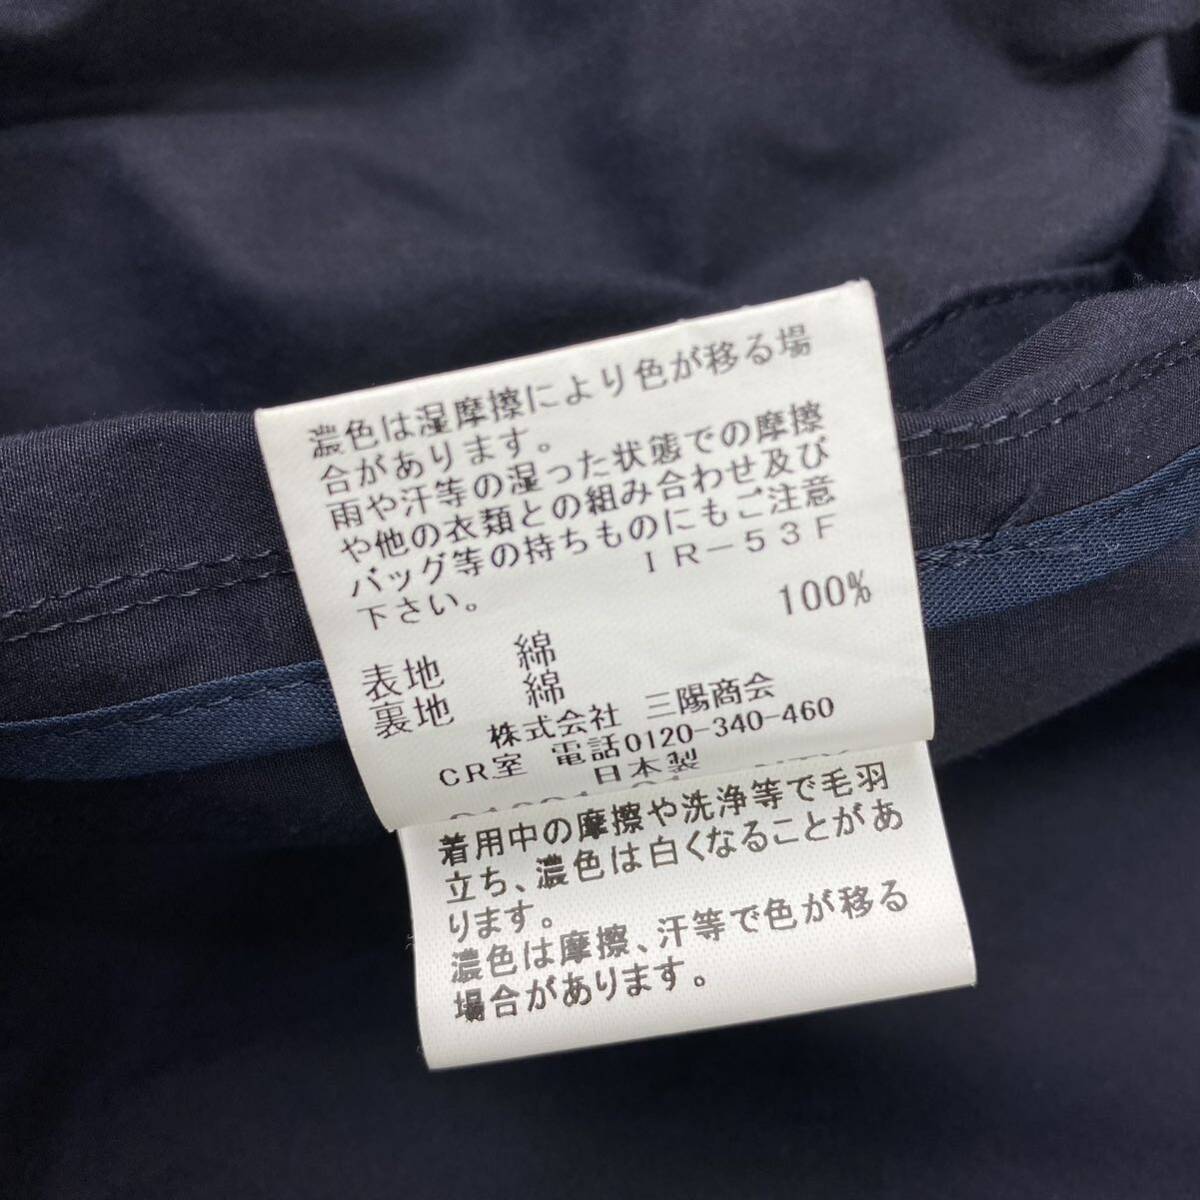 1 иен ~[ редкий ]Macintosh Macintosh пальто с отложным воротником резина скидка пальто длинное пальто в клетку 